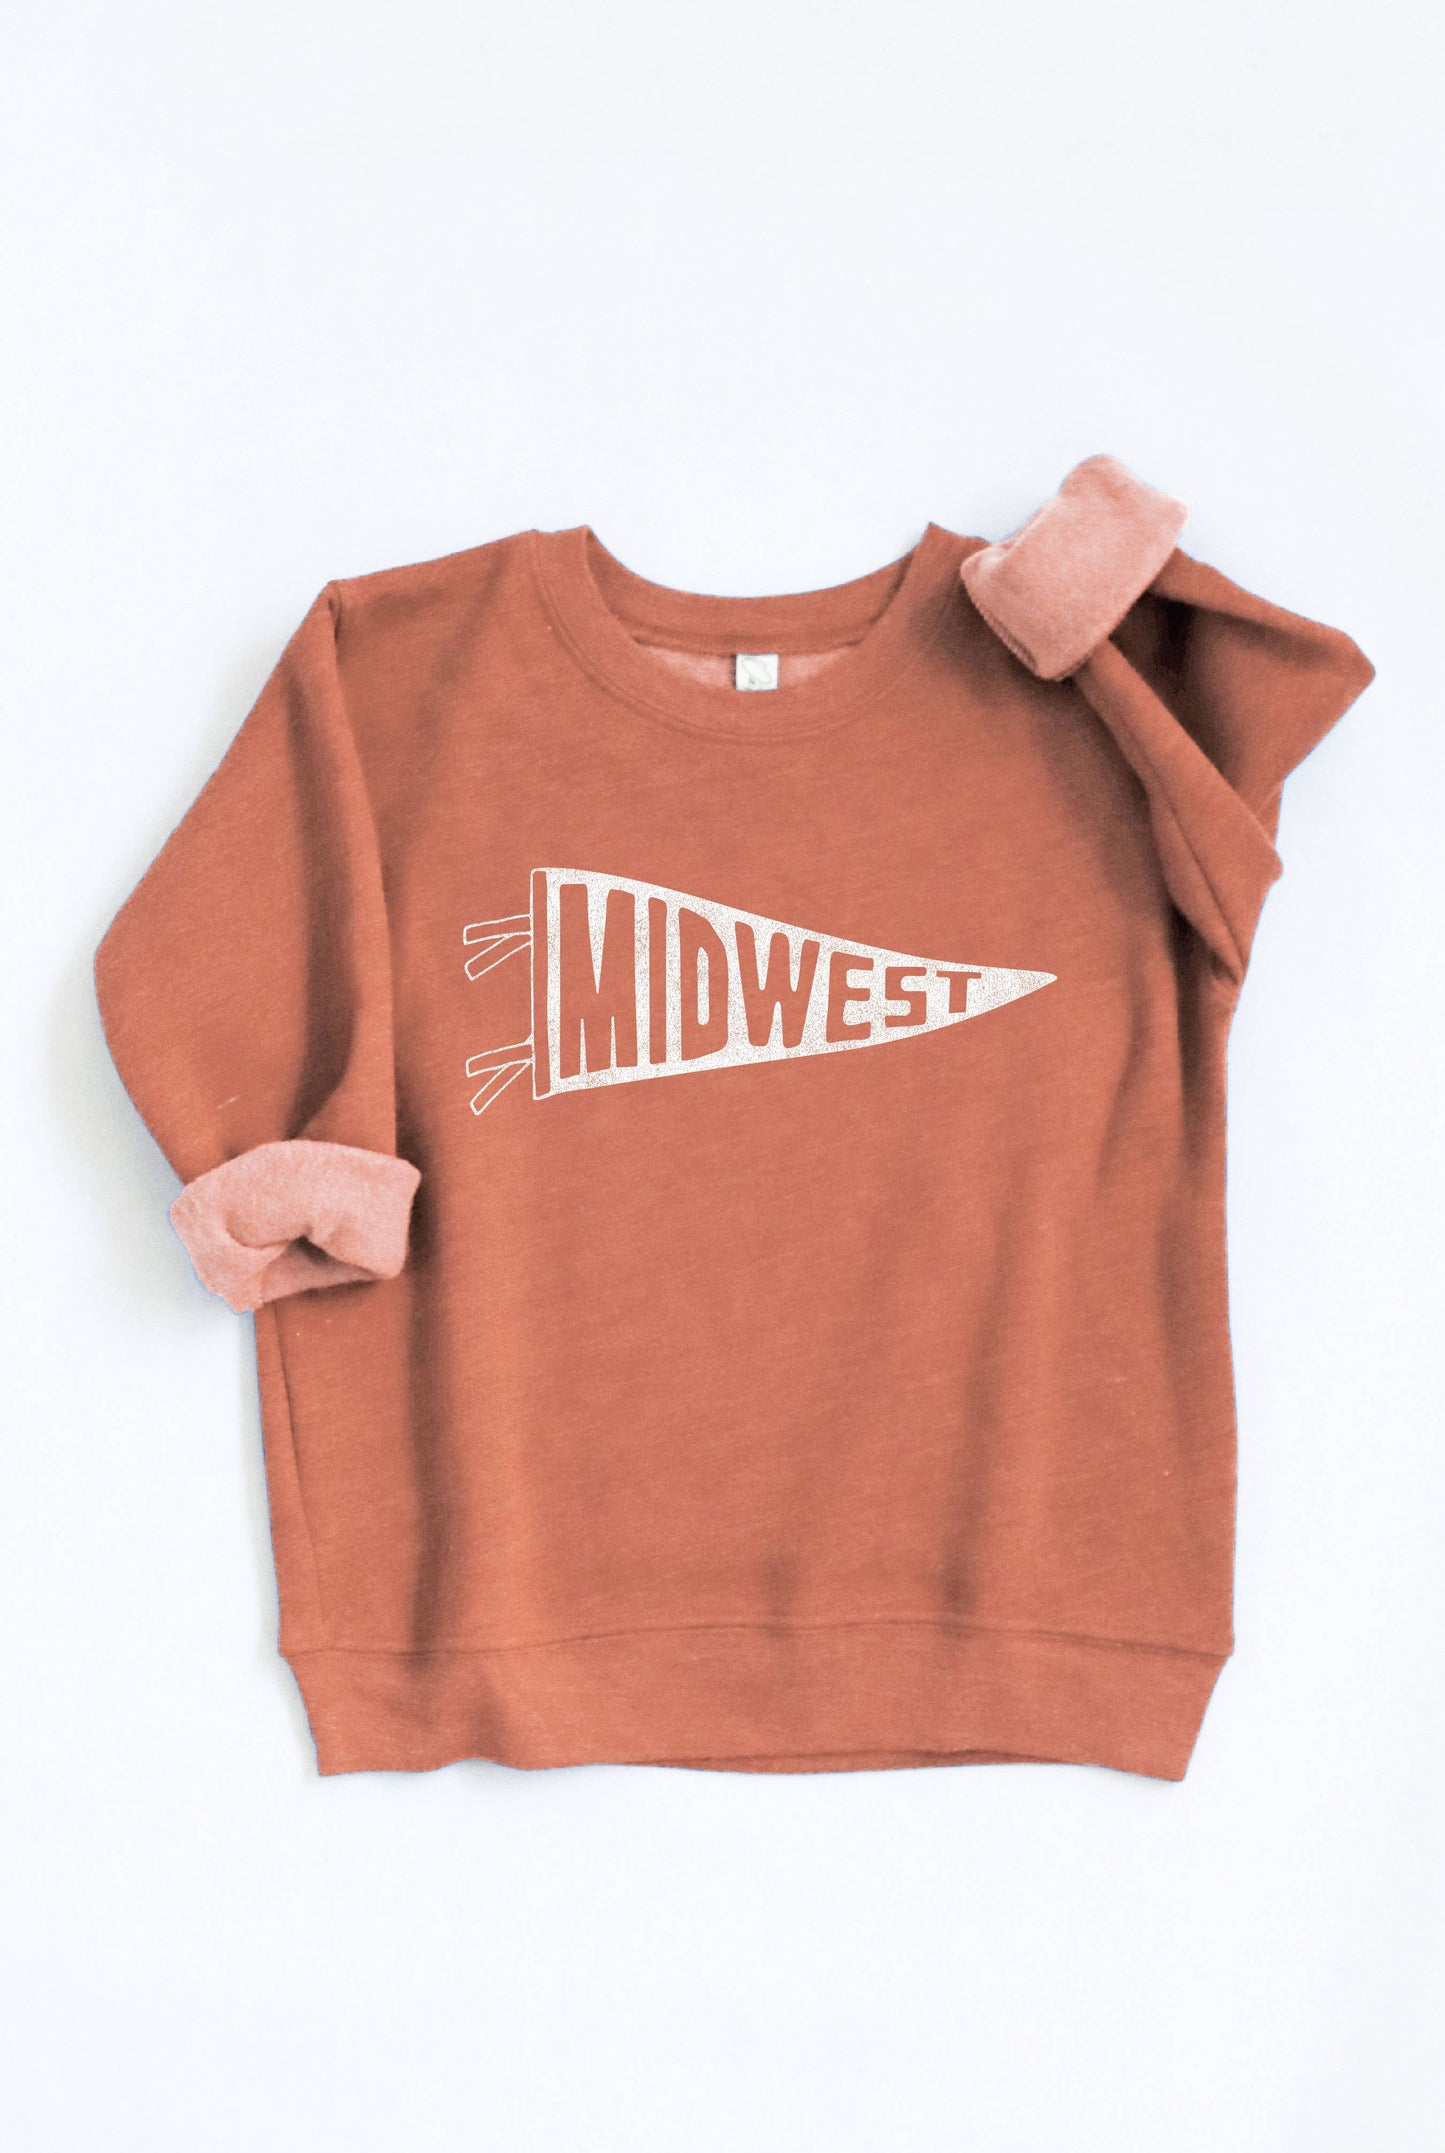 MIDWEST PENNANT Sweatshirt